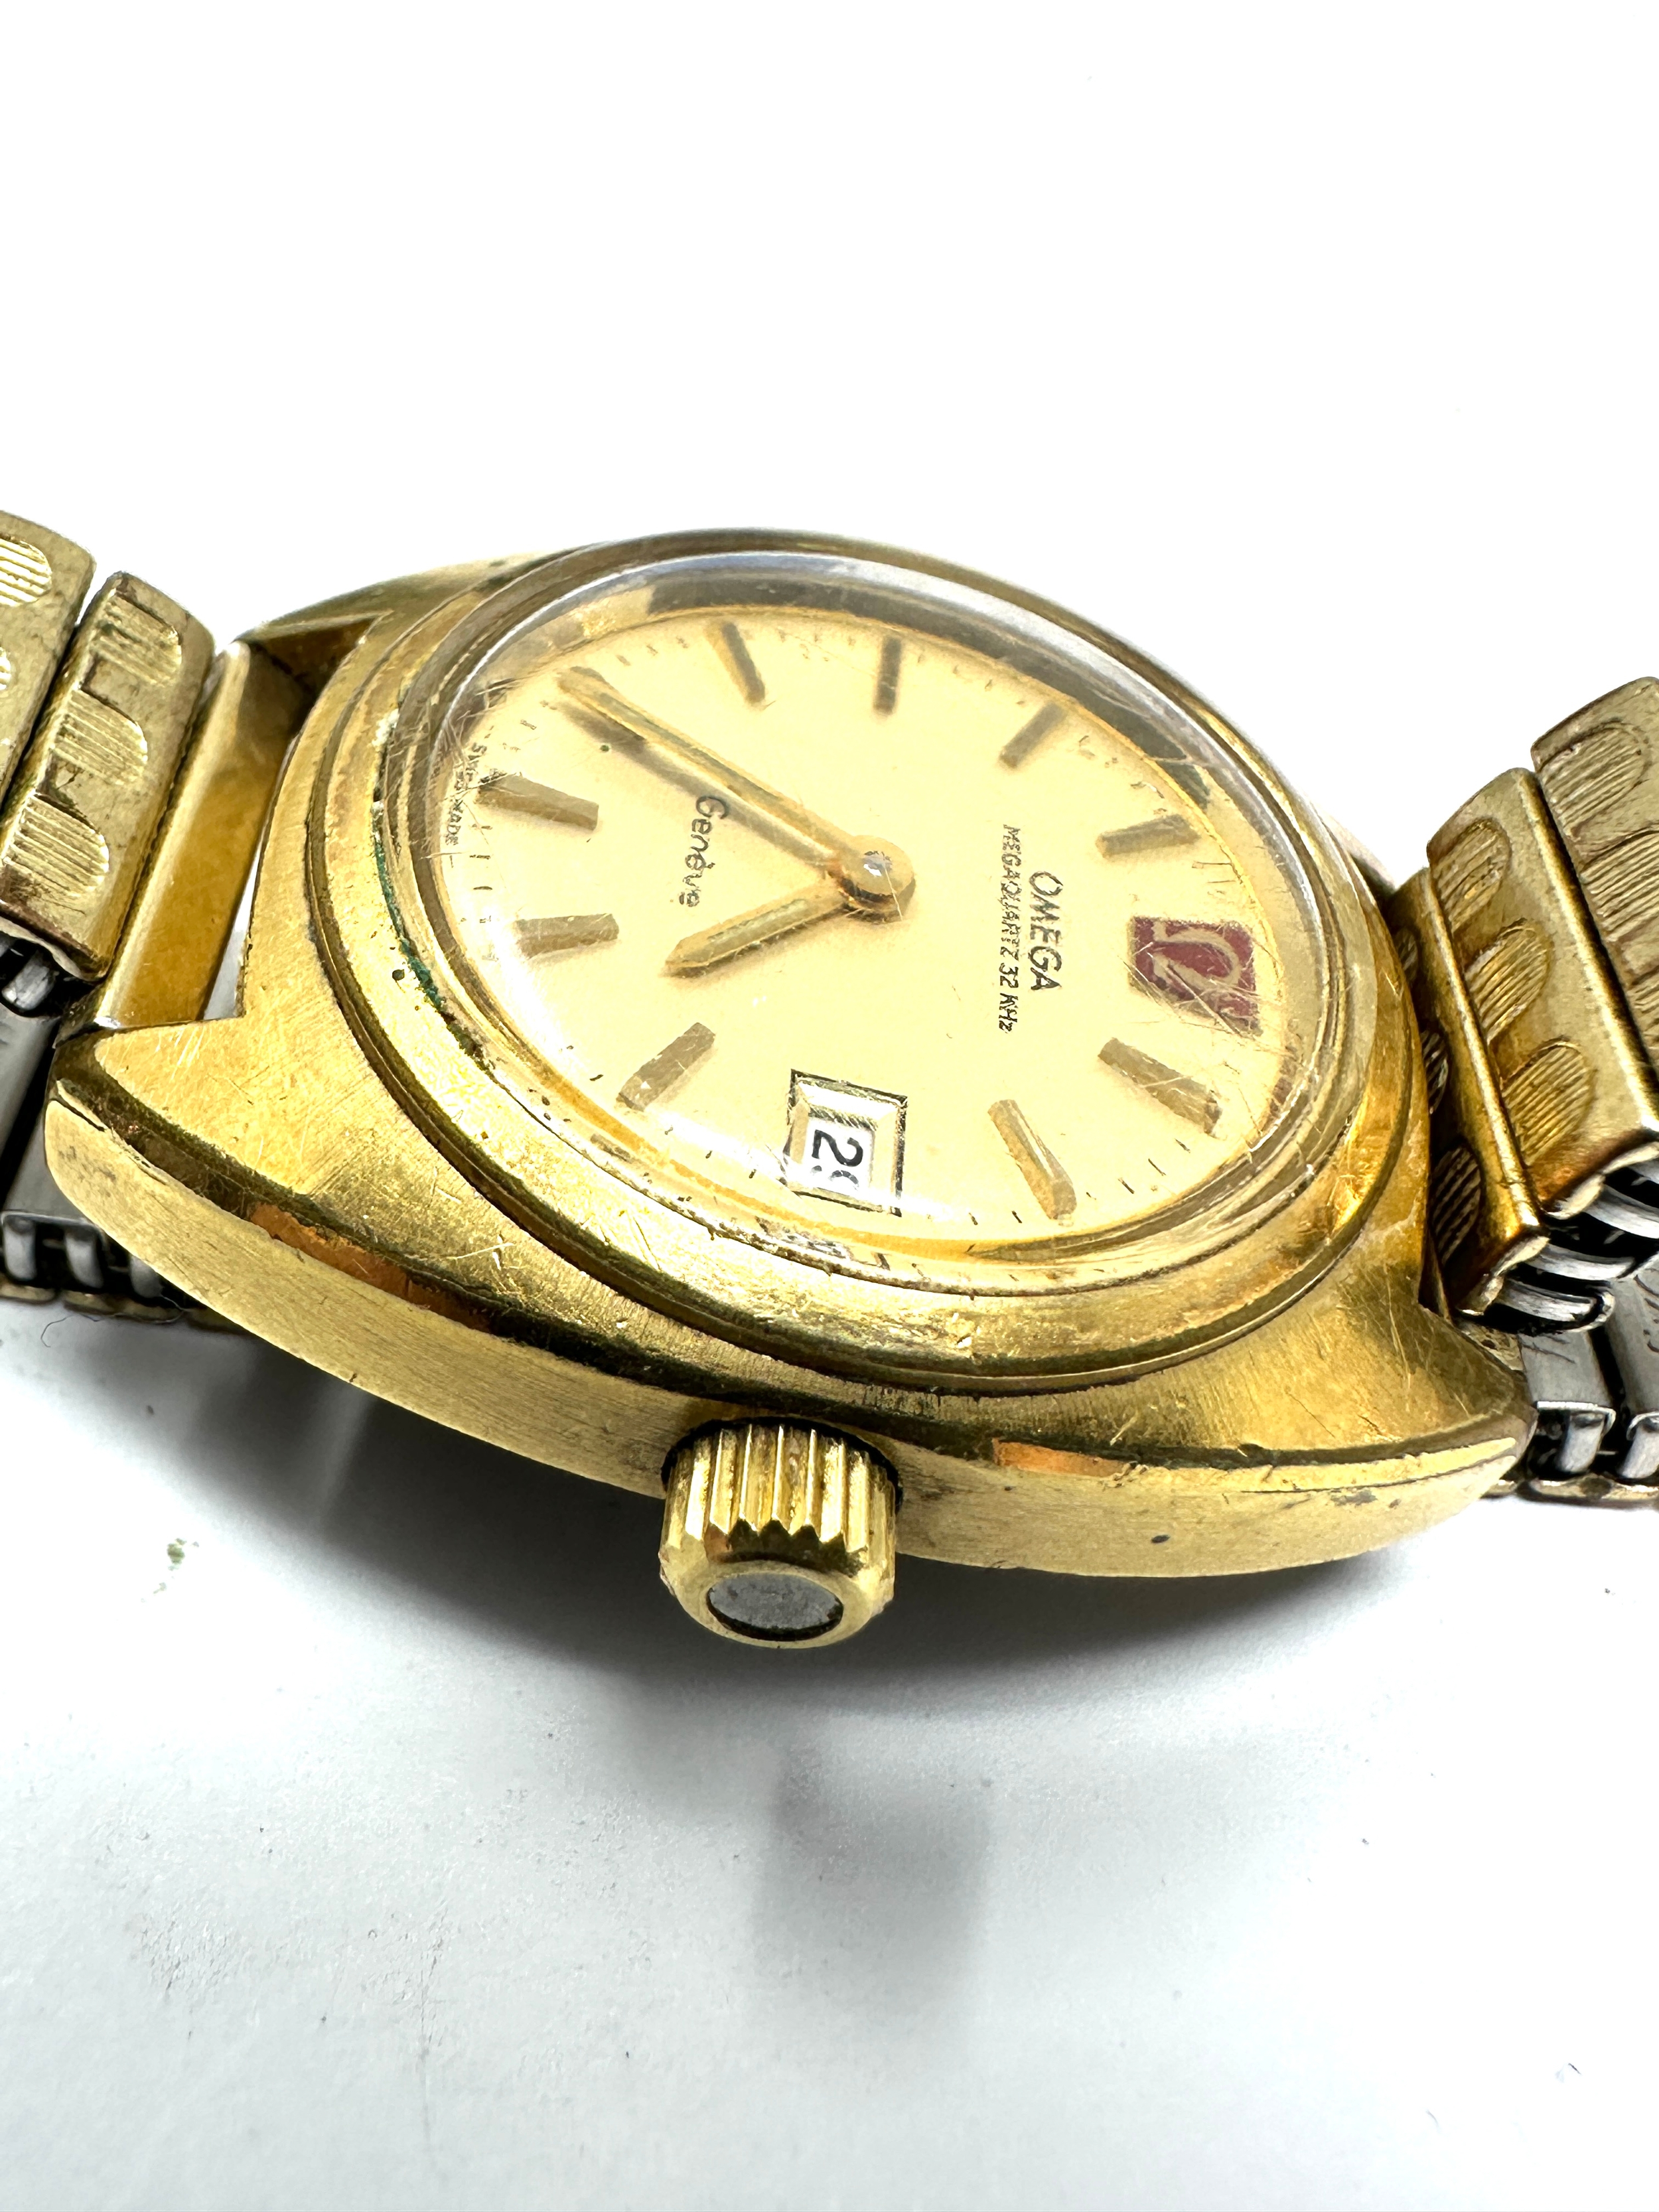 Vintage Ladies 0mega geneve megaquartz 32 KHz date gold plated quartz wristwatch the watch is - Image 3 of 4